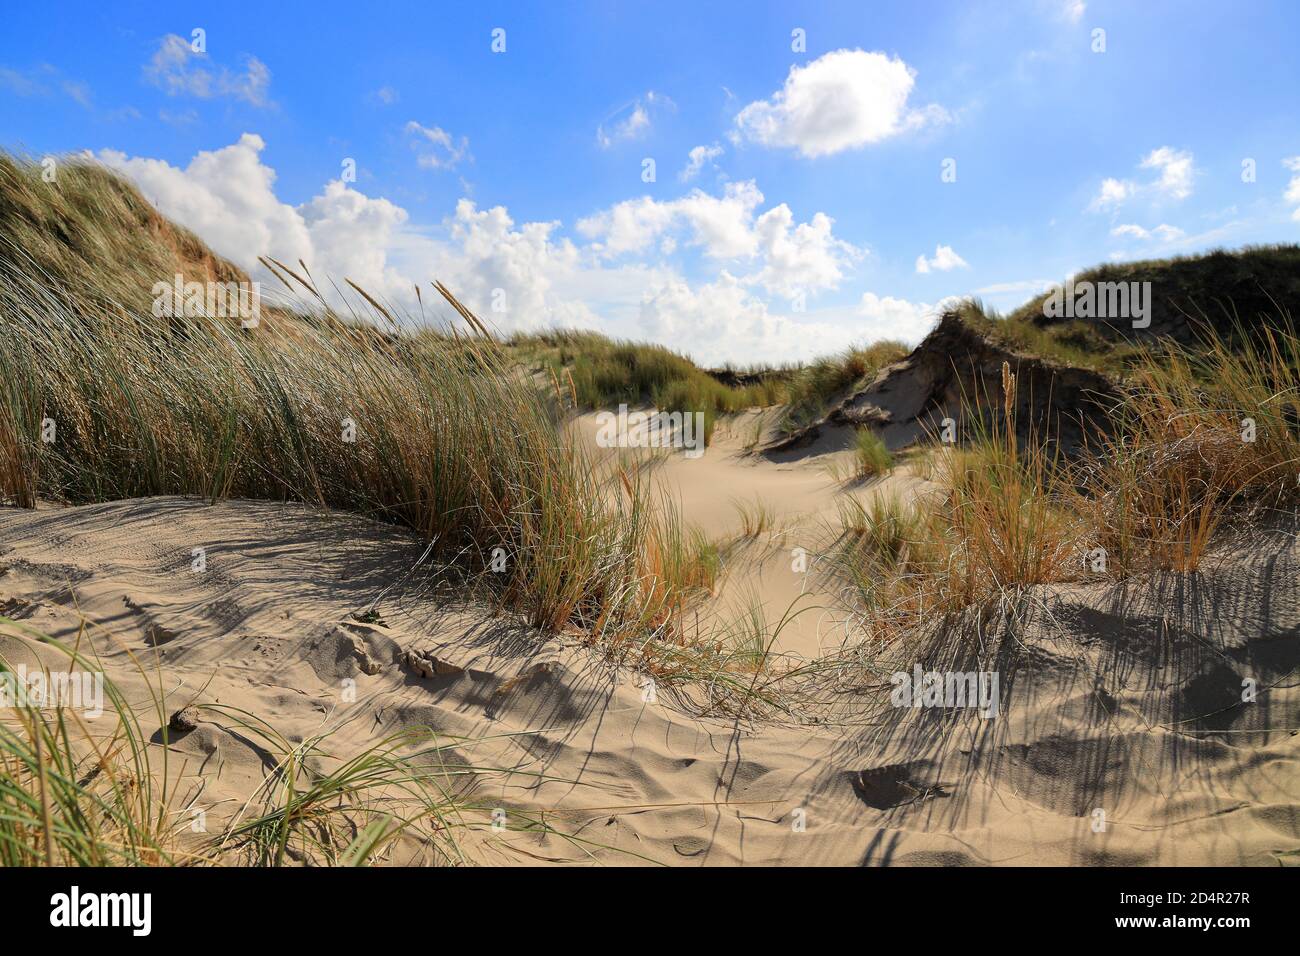 Dunes in Egmond aan Zee. North Sea, the Netherlands. Stock Photo